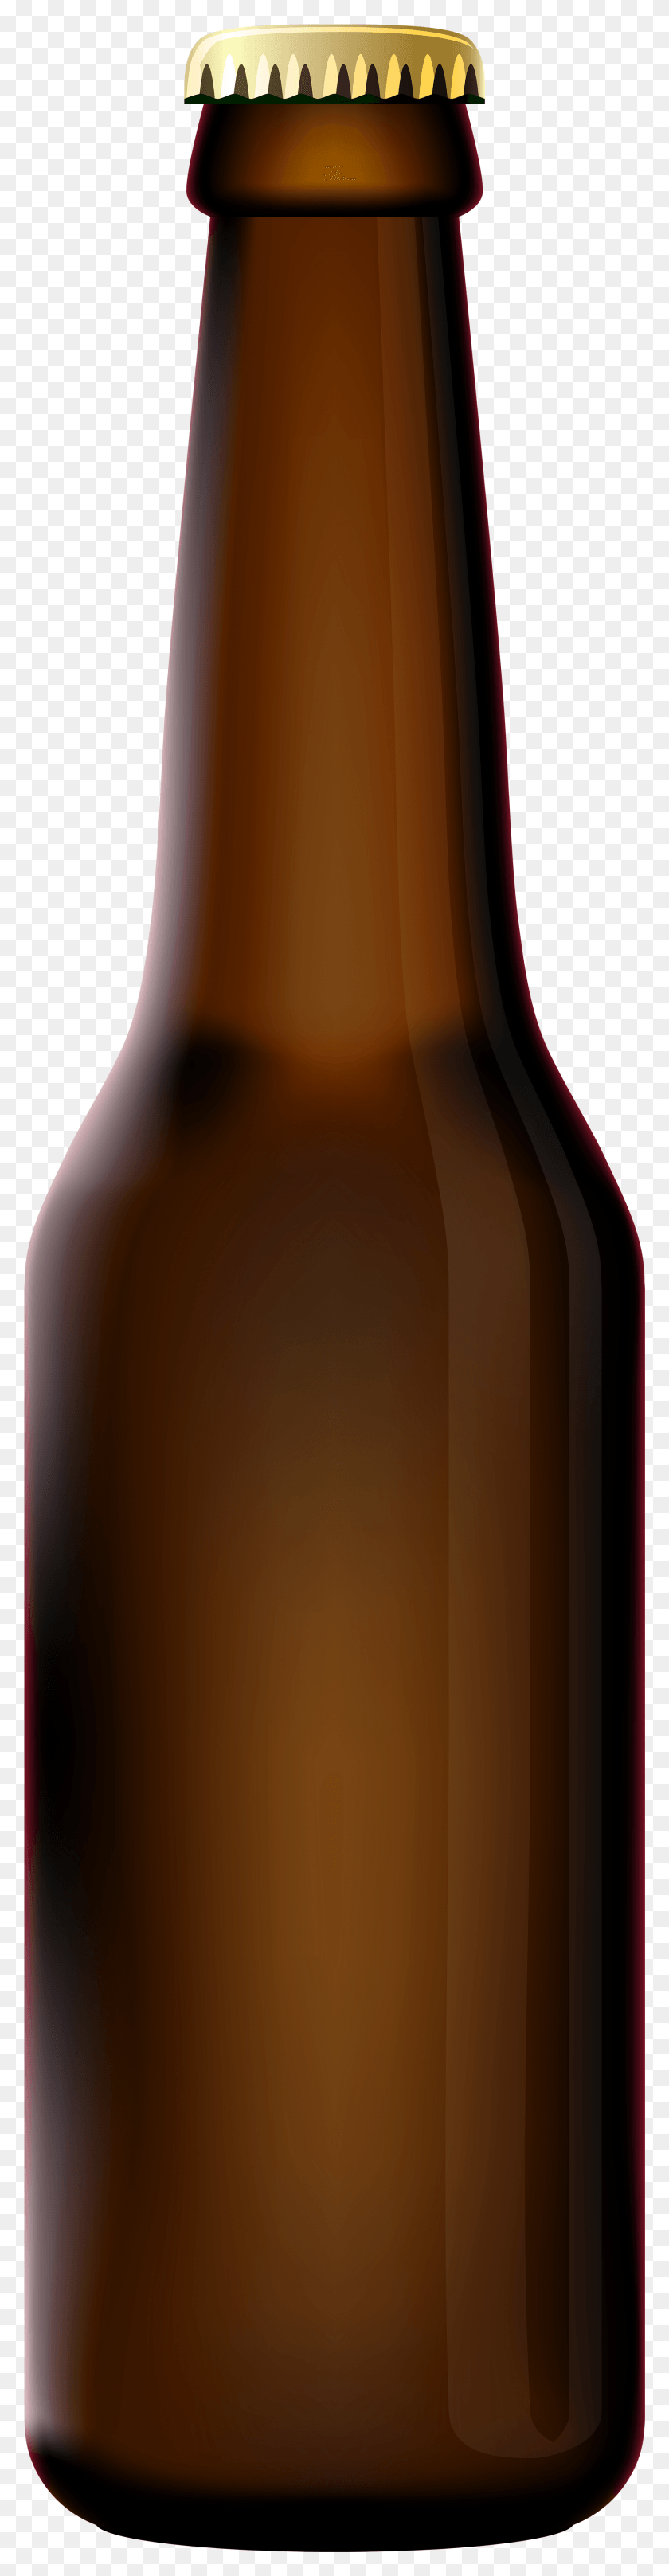 1698x6912 Beer Bottle Clip Art Transparent Beer Bottle, Beer, Alcohol, Beverage HD PNG Download